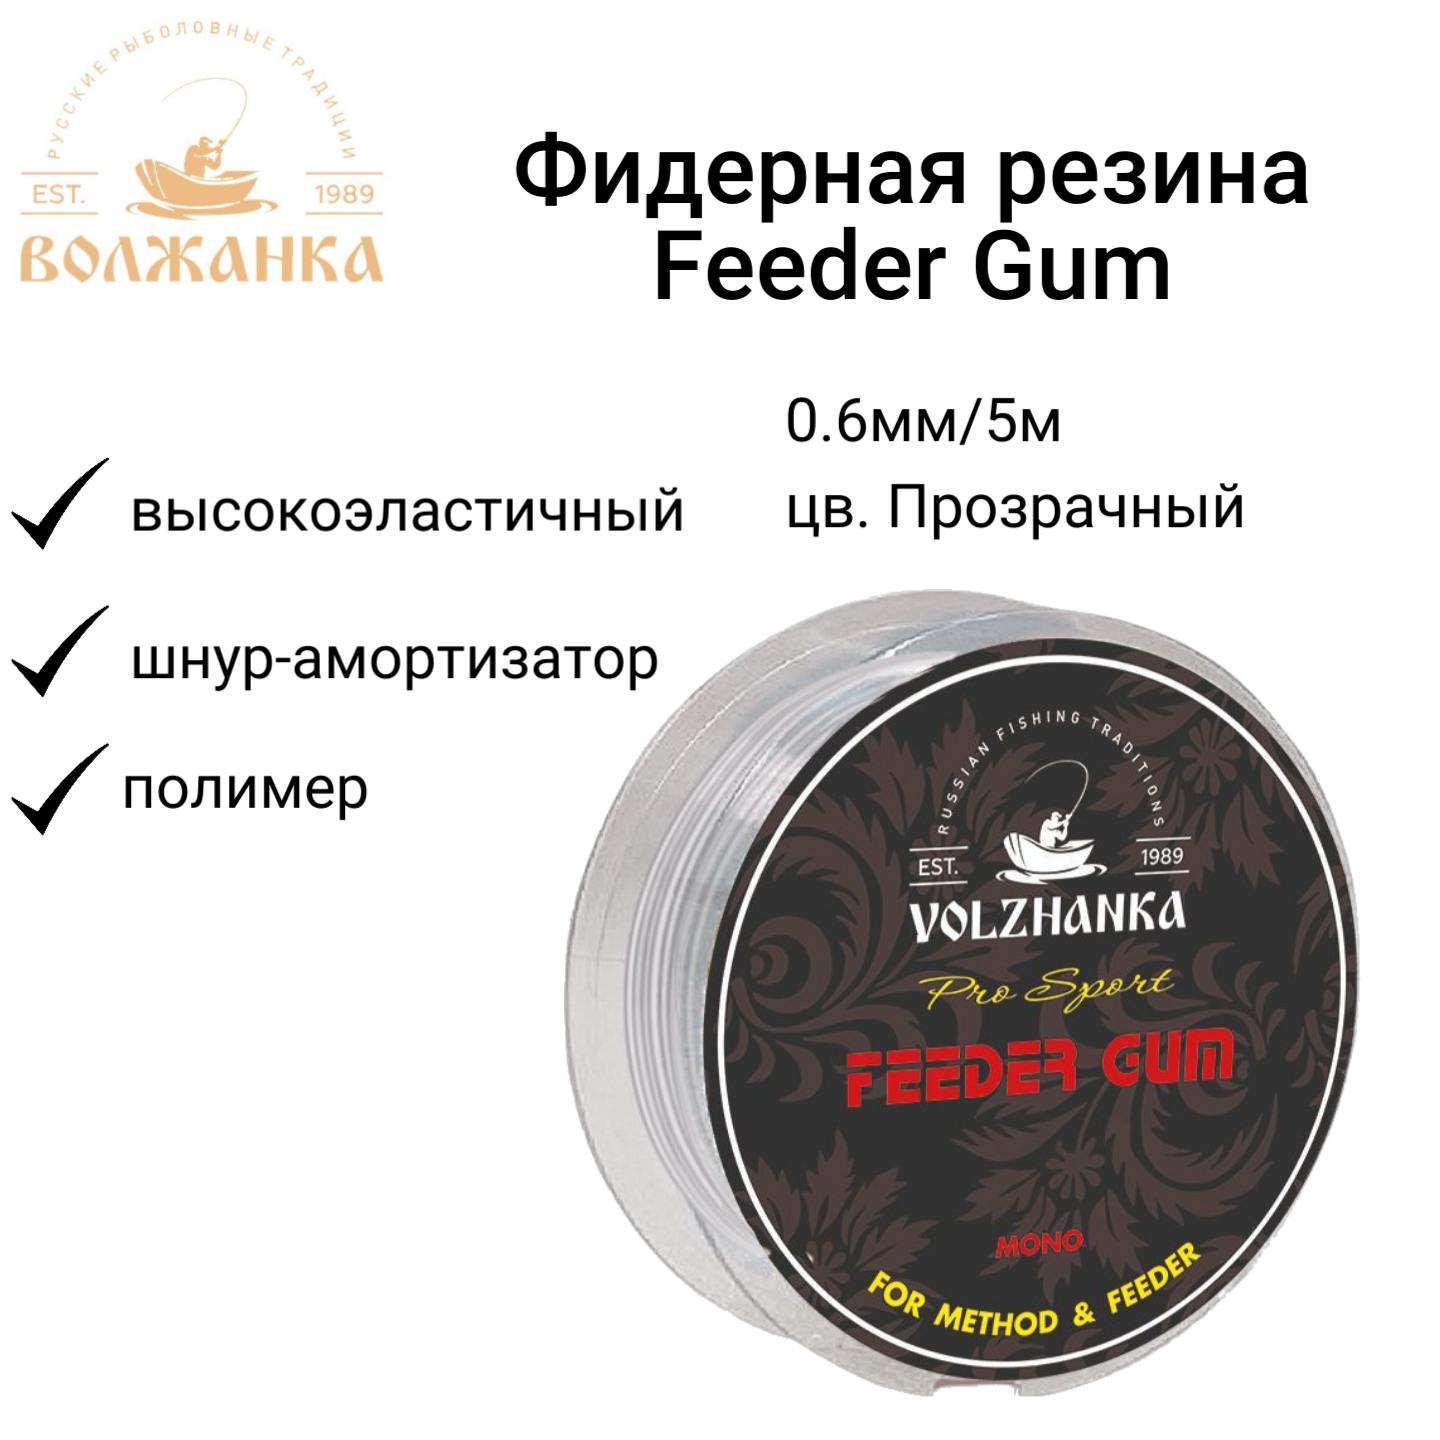 Фидерная резина Волжанка "Feeder Gum" 0.6мм/5м цв. Прозрачный/Фидергам